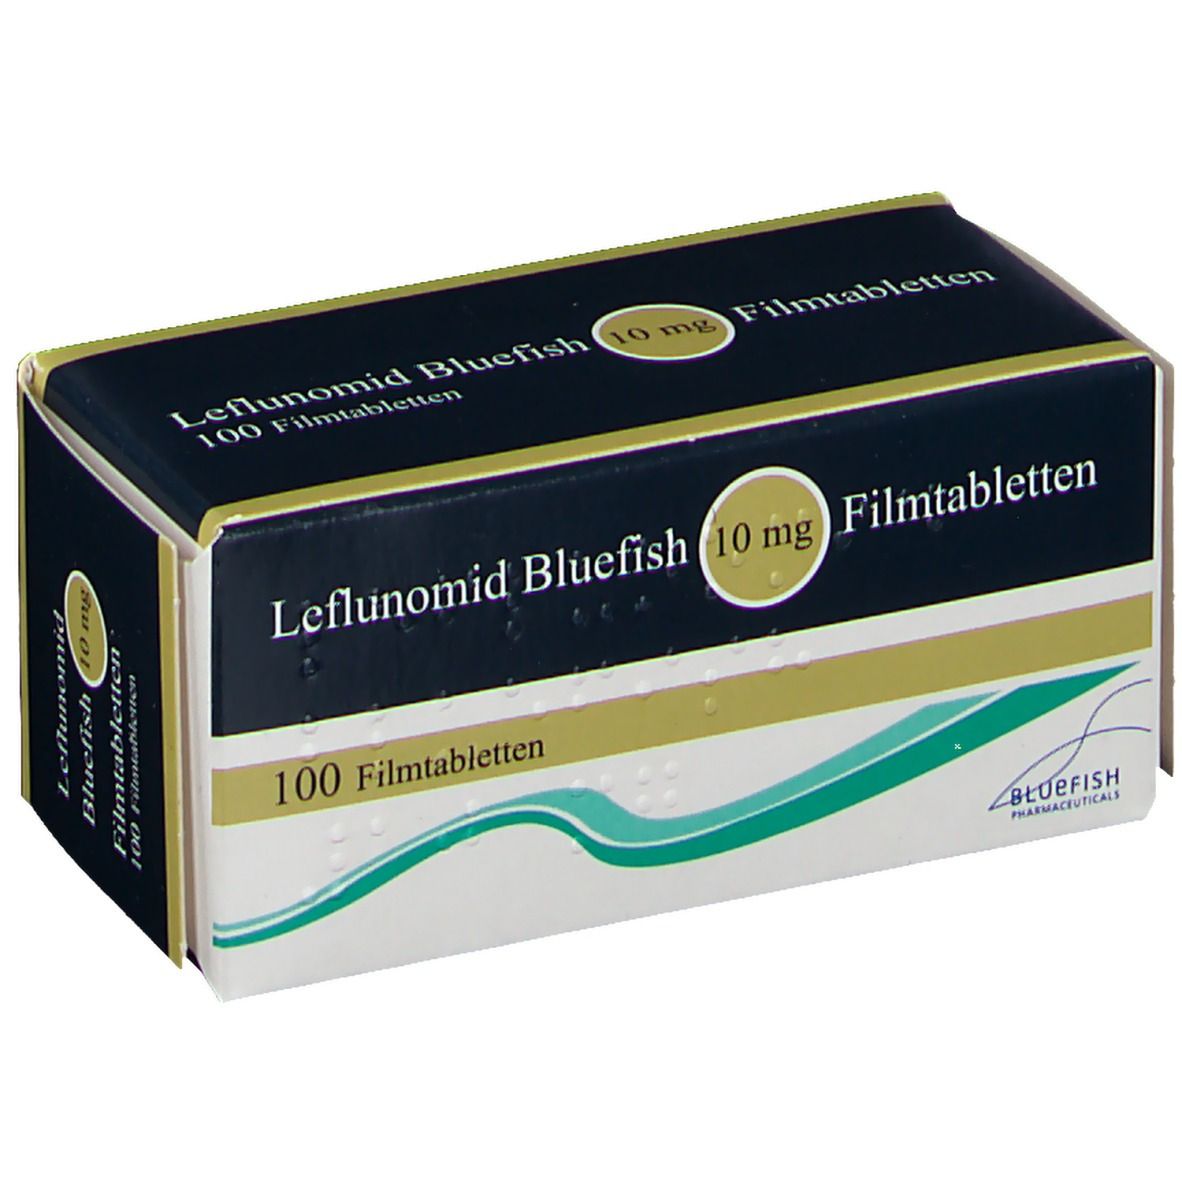 Leflunomid Bluefish 10 mg